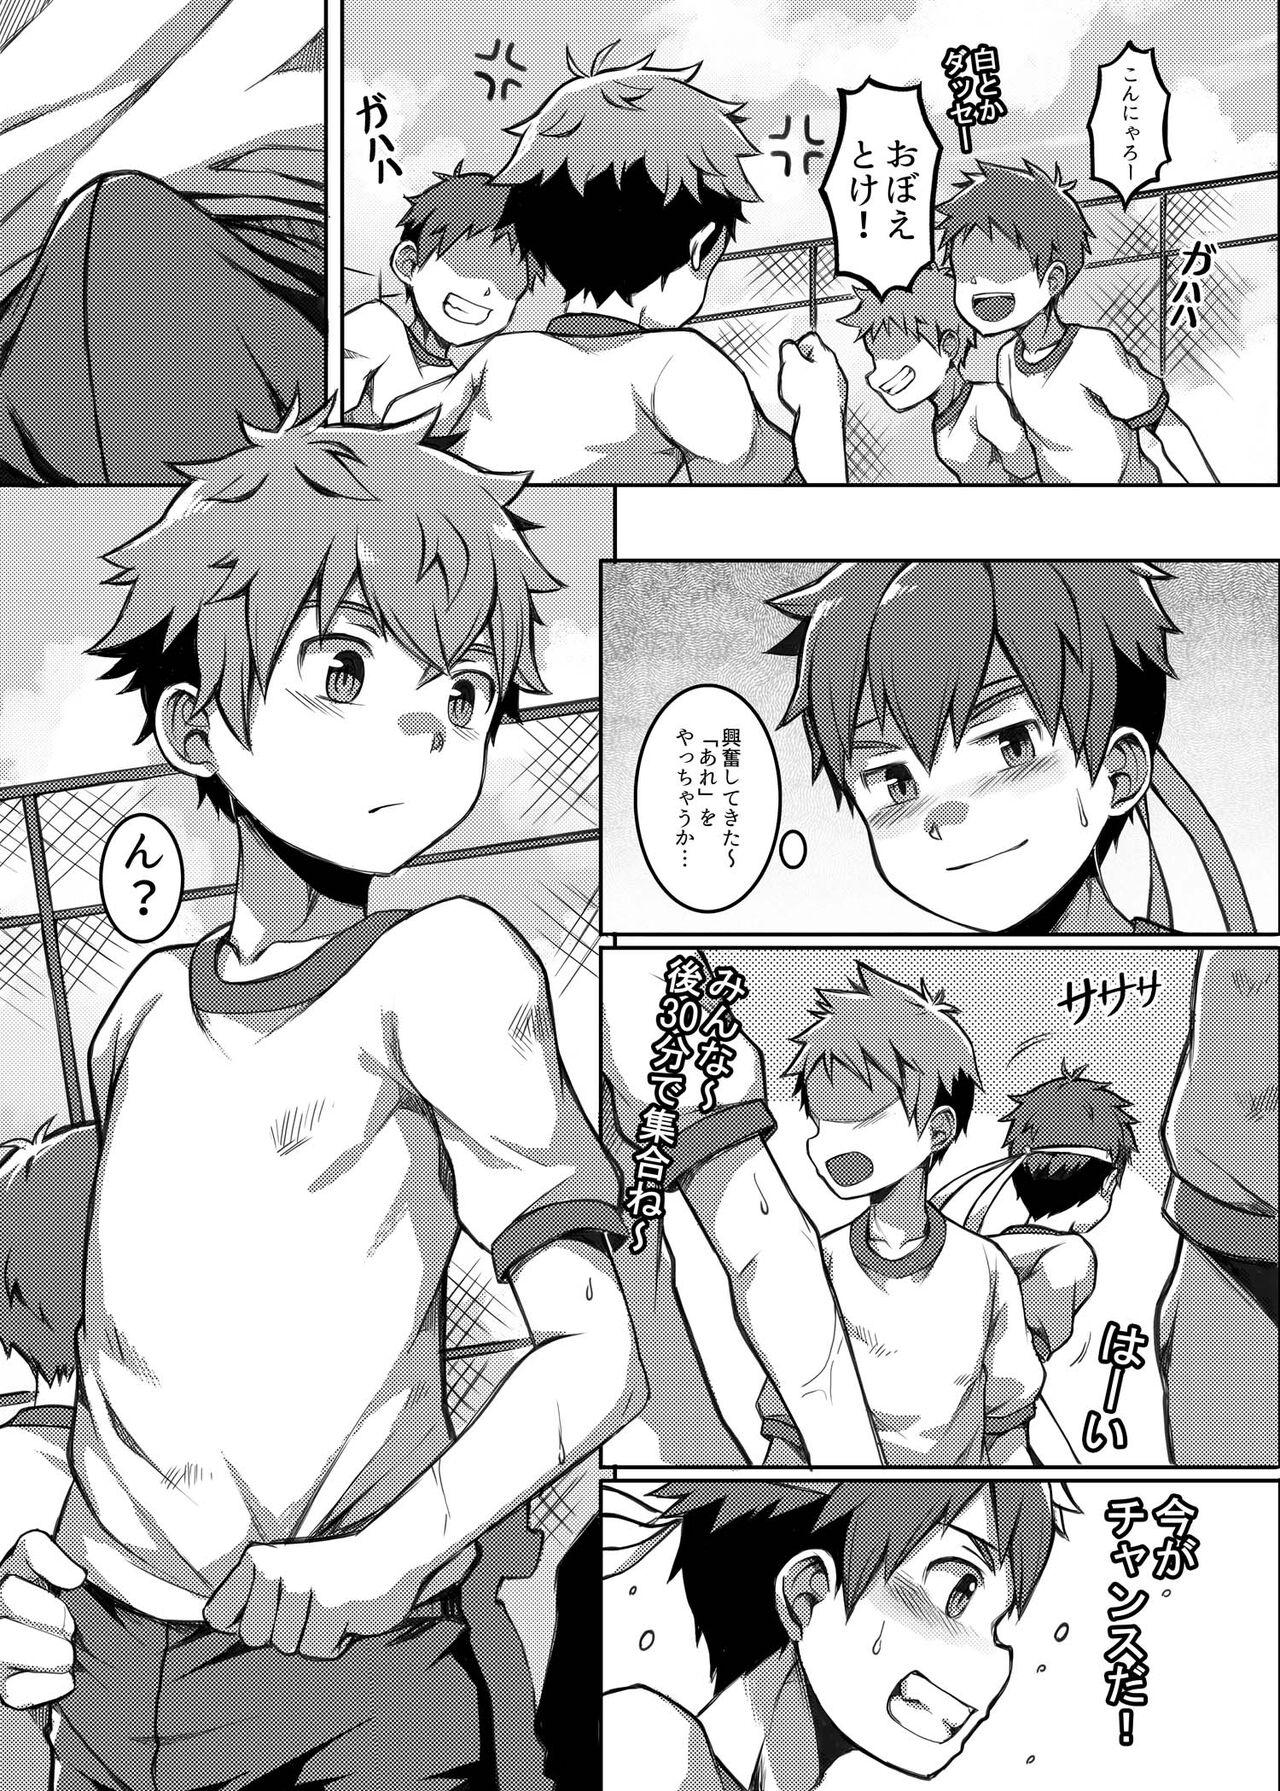 Threesome Taiiku Jugyou wa Saikou daze! - Physical Education is Awesome! - Original Argenta - Page 6